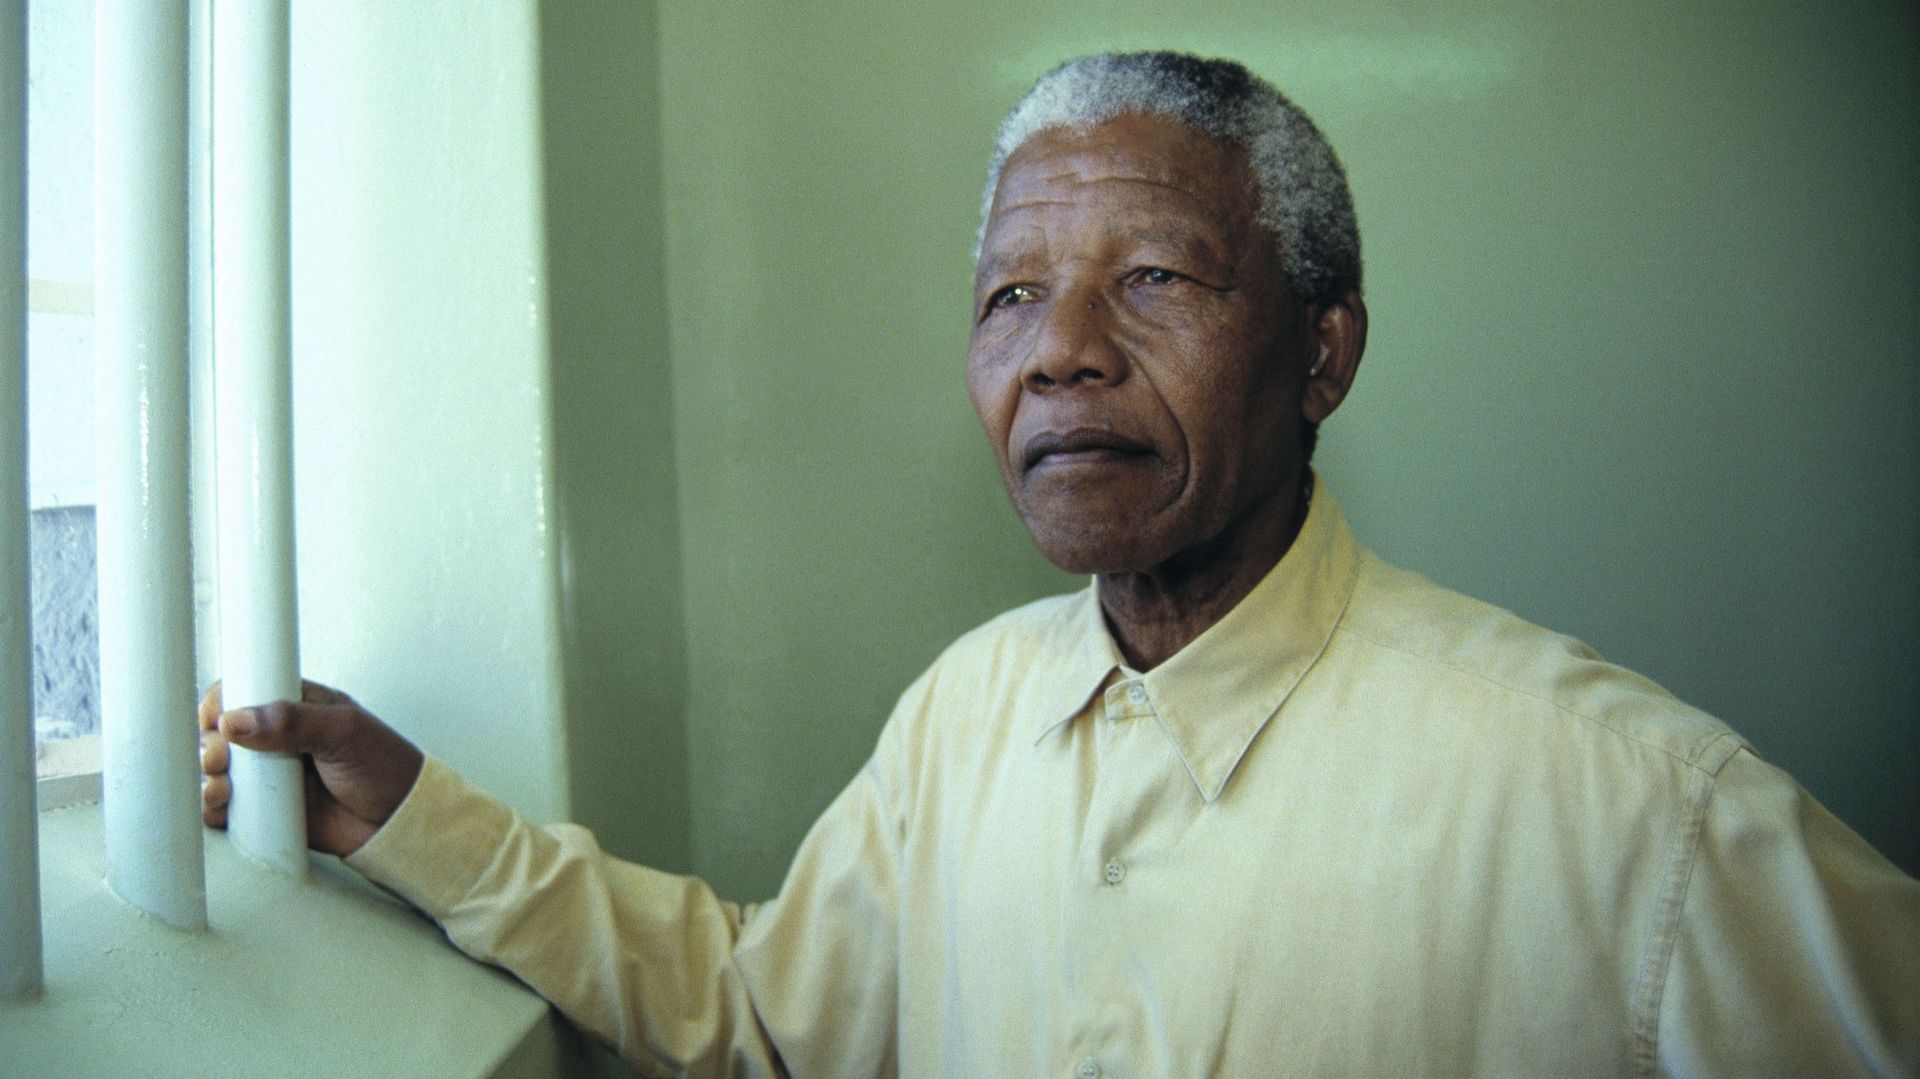 La clé de la cellule de Mandela aux enchères, "insupportable" proteste Pretoria